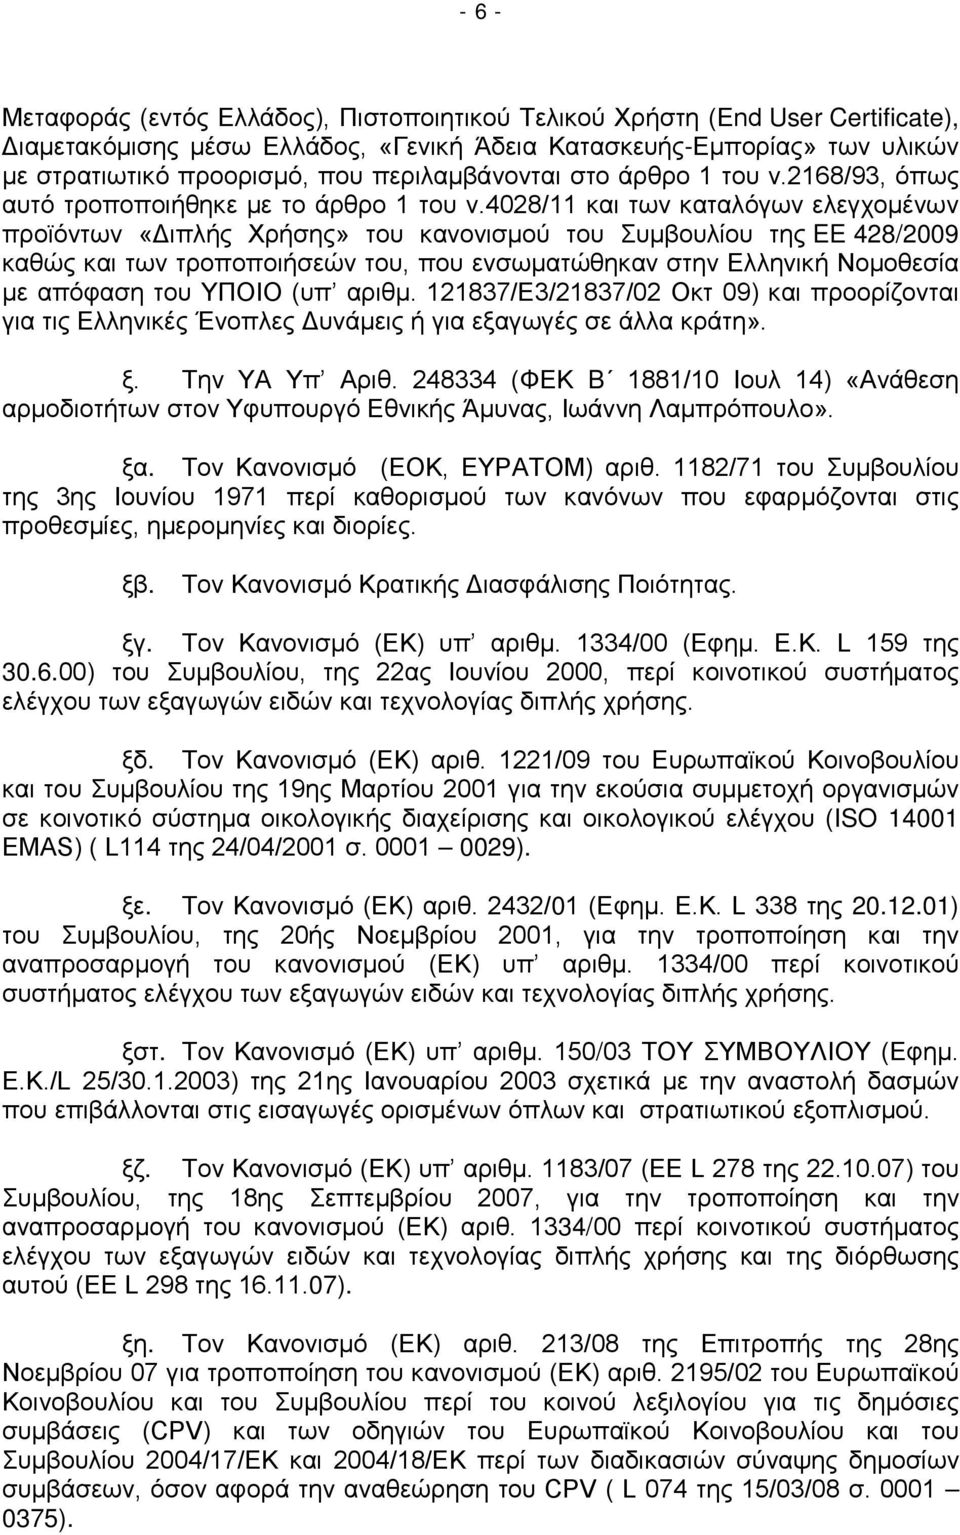 4028/11 και των καταλόγων ελεγχομένων προϊόντων «Διπλής Χρήσης» του κανονισμού του Συμβουλίου της EE 428/2009 καθώς και των τροποποιήσεών του, που ενσωματώθηκαν στην Ελληνική Νομοθεσία με απόφαση του